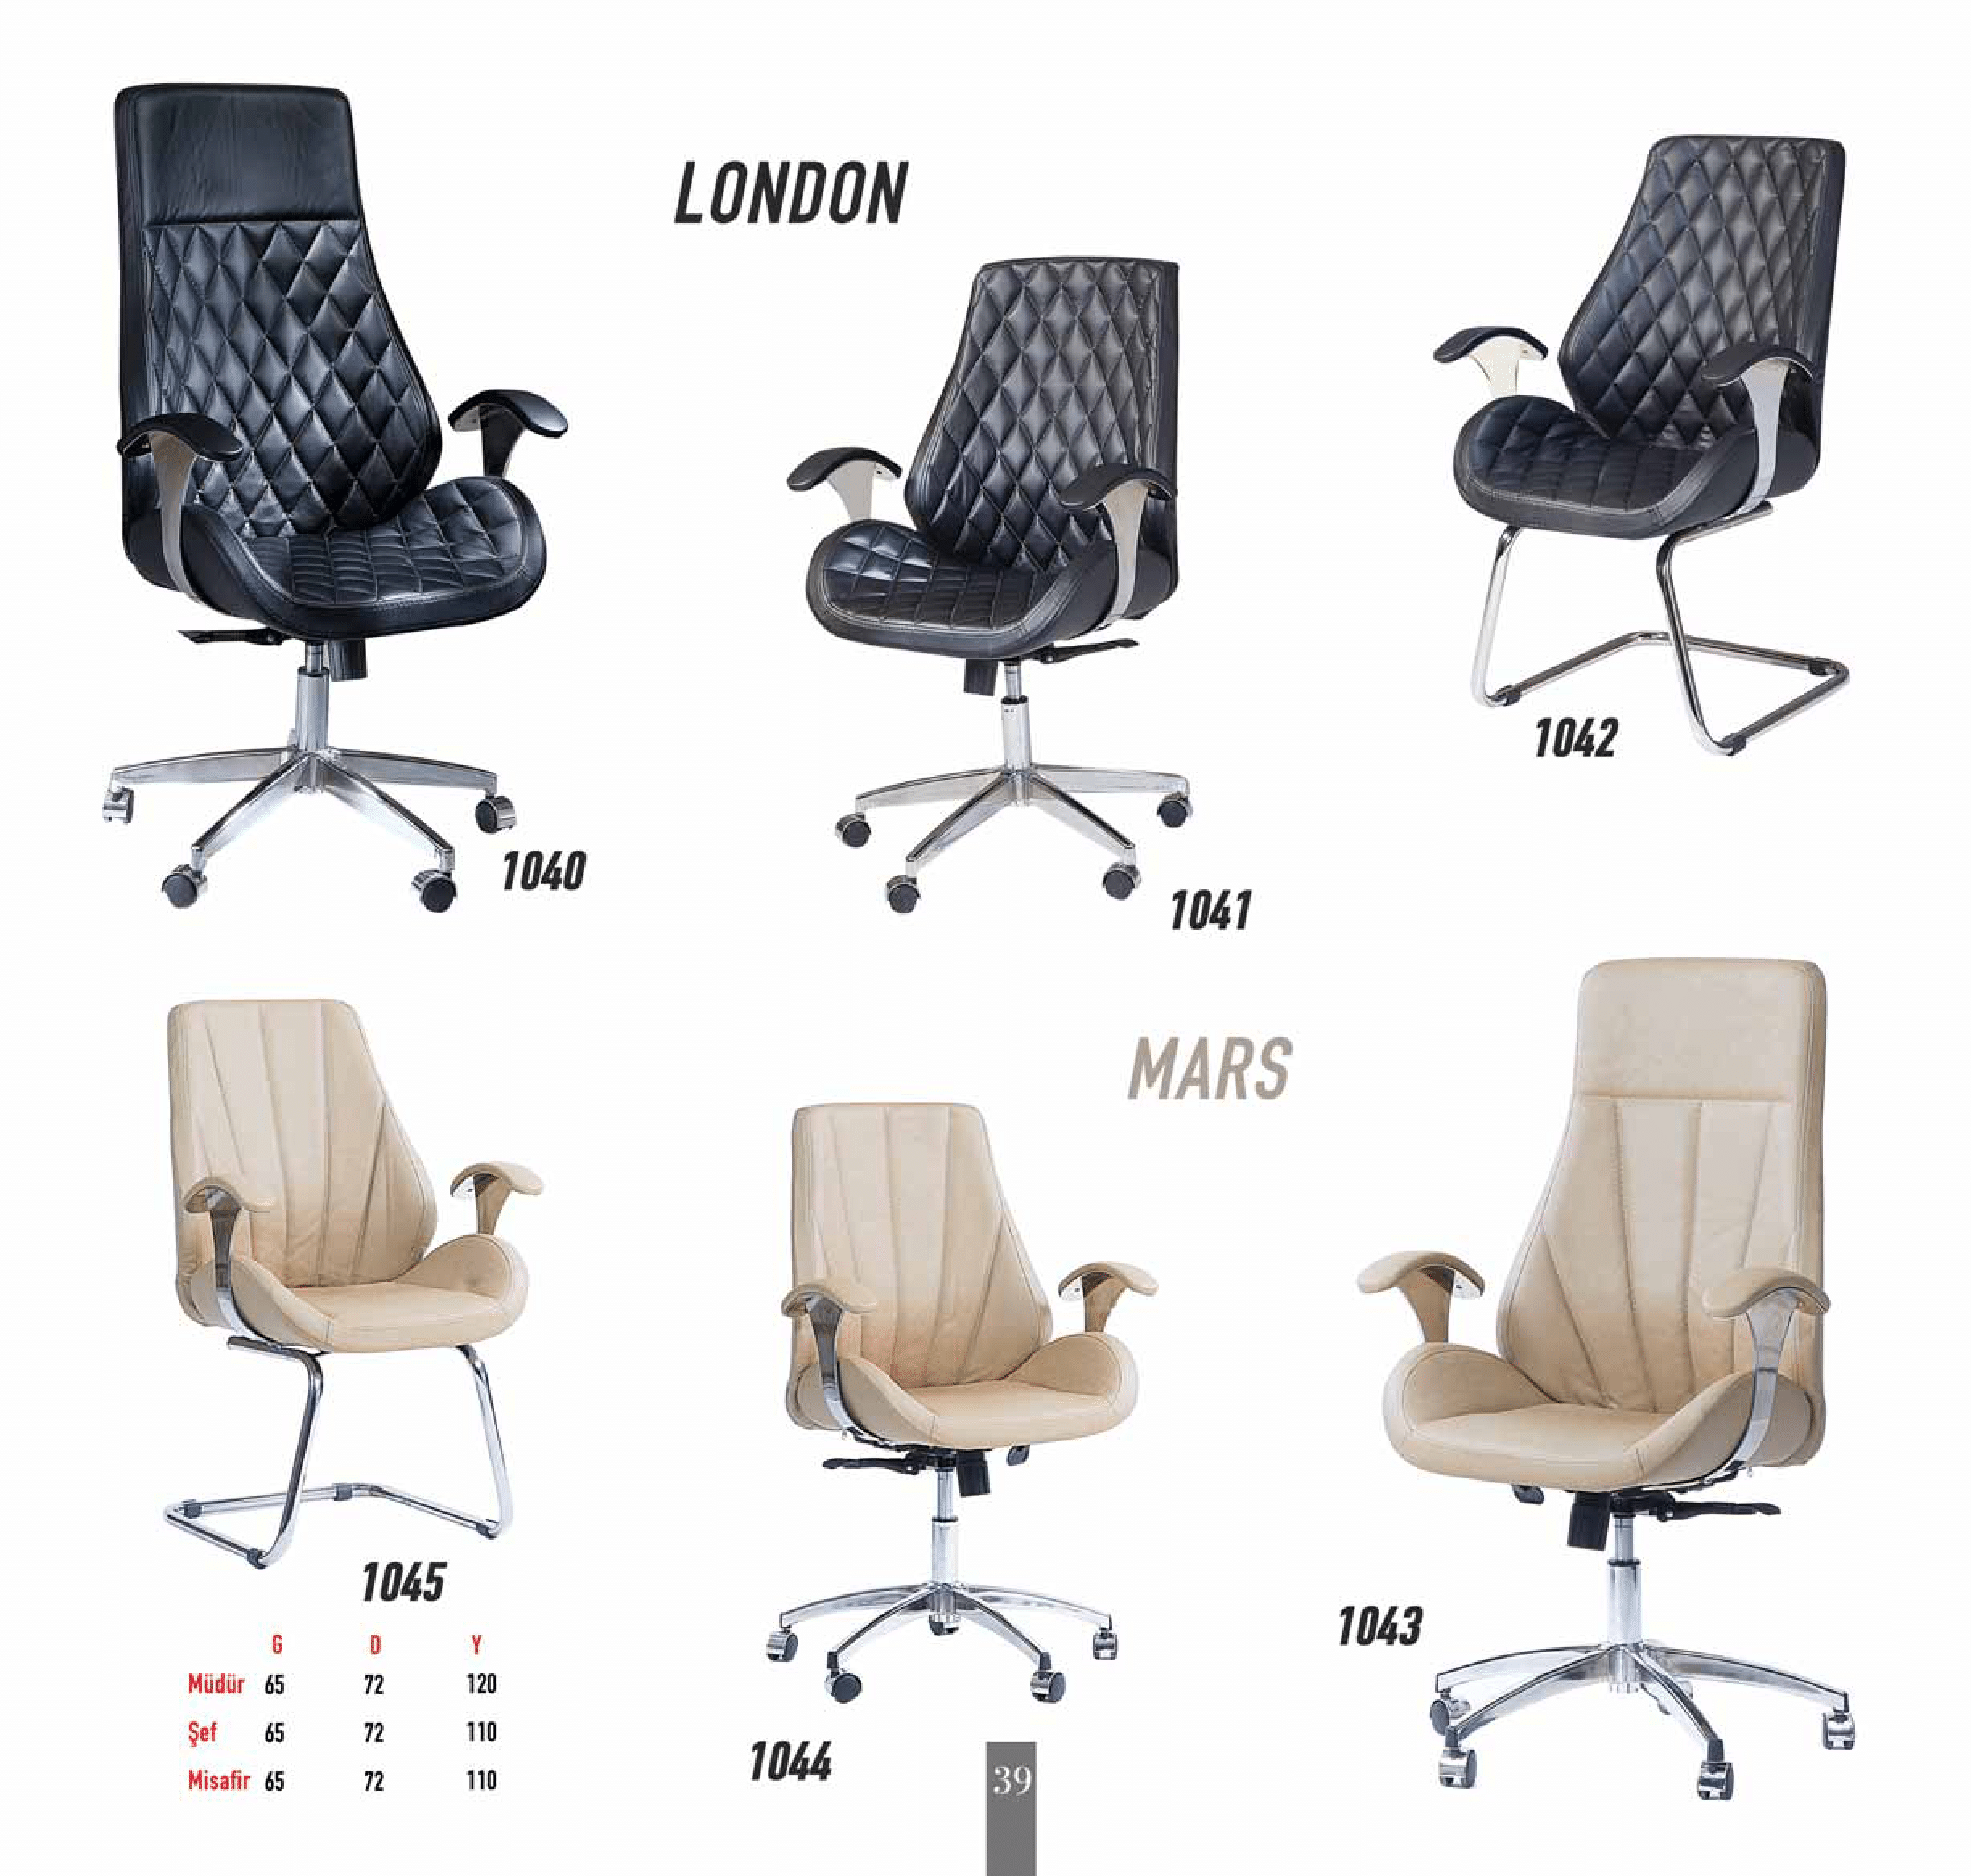 BRM ofis mobilyaları ve koltukları